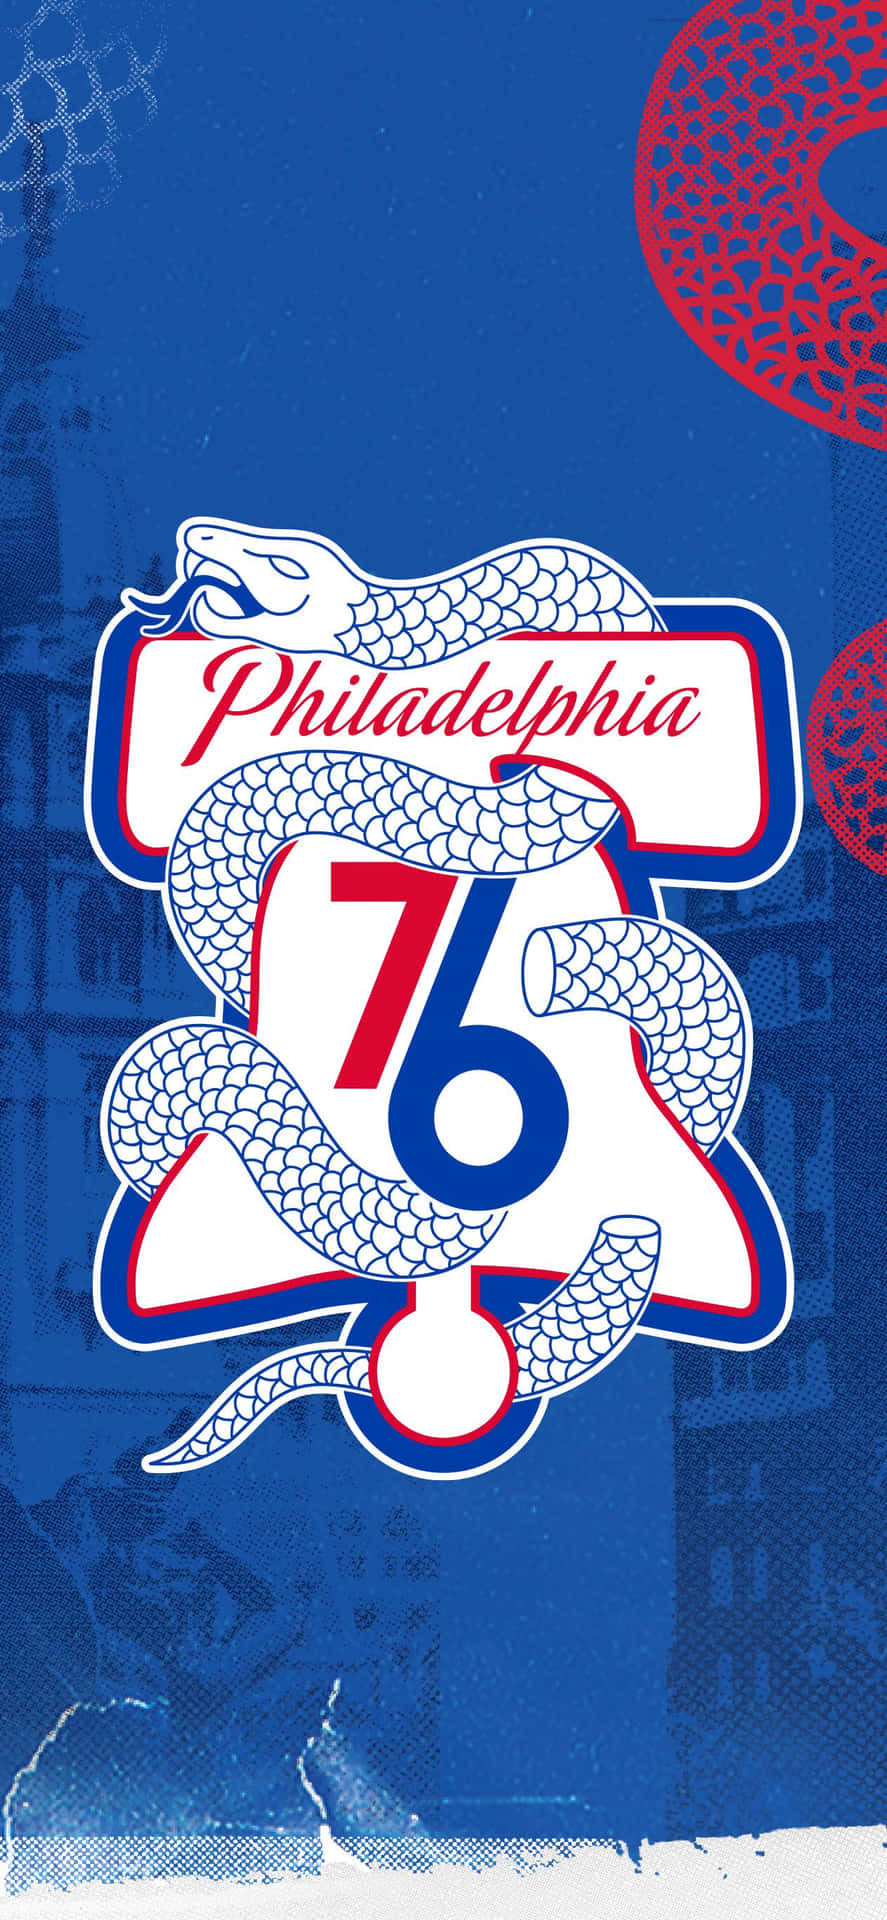 Känn Dig Ostoppbar Och Representera Ditt Lag Med Denna Philadelphia 76ers-inspirerade Iphone-kurs Eller Bakgrundsbild. Wallpaper